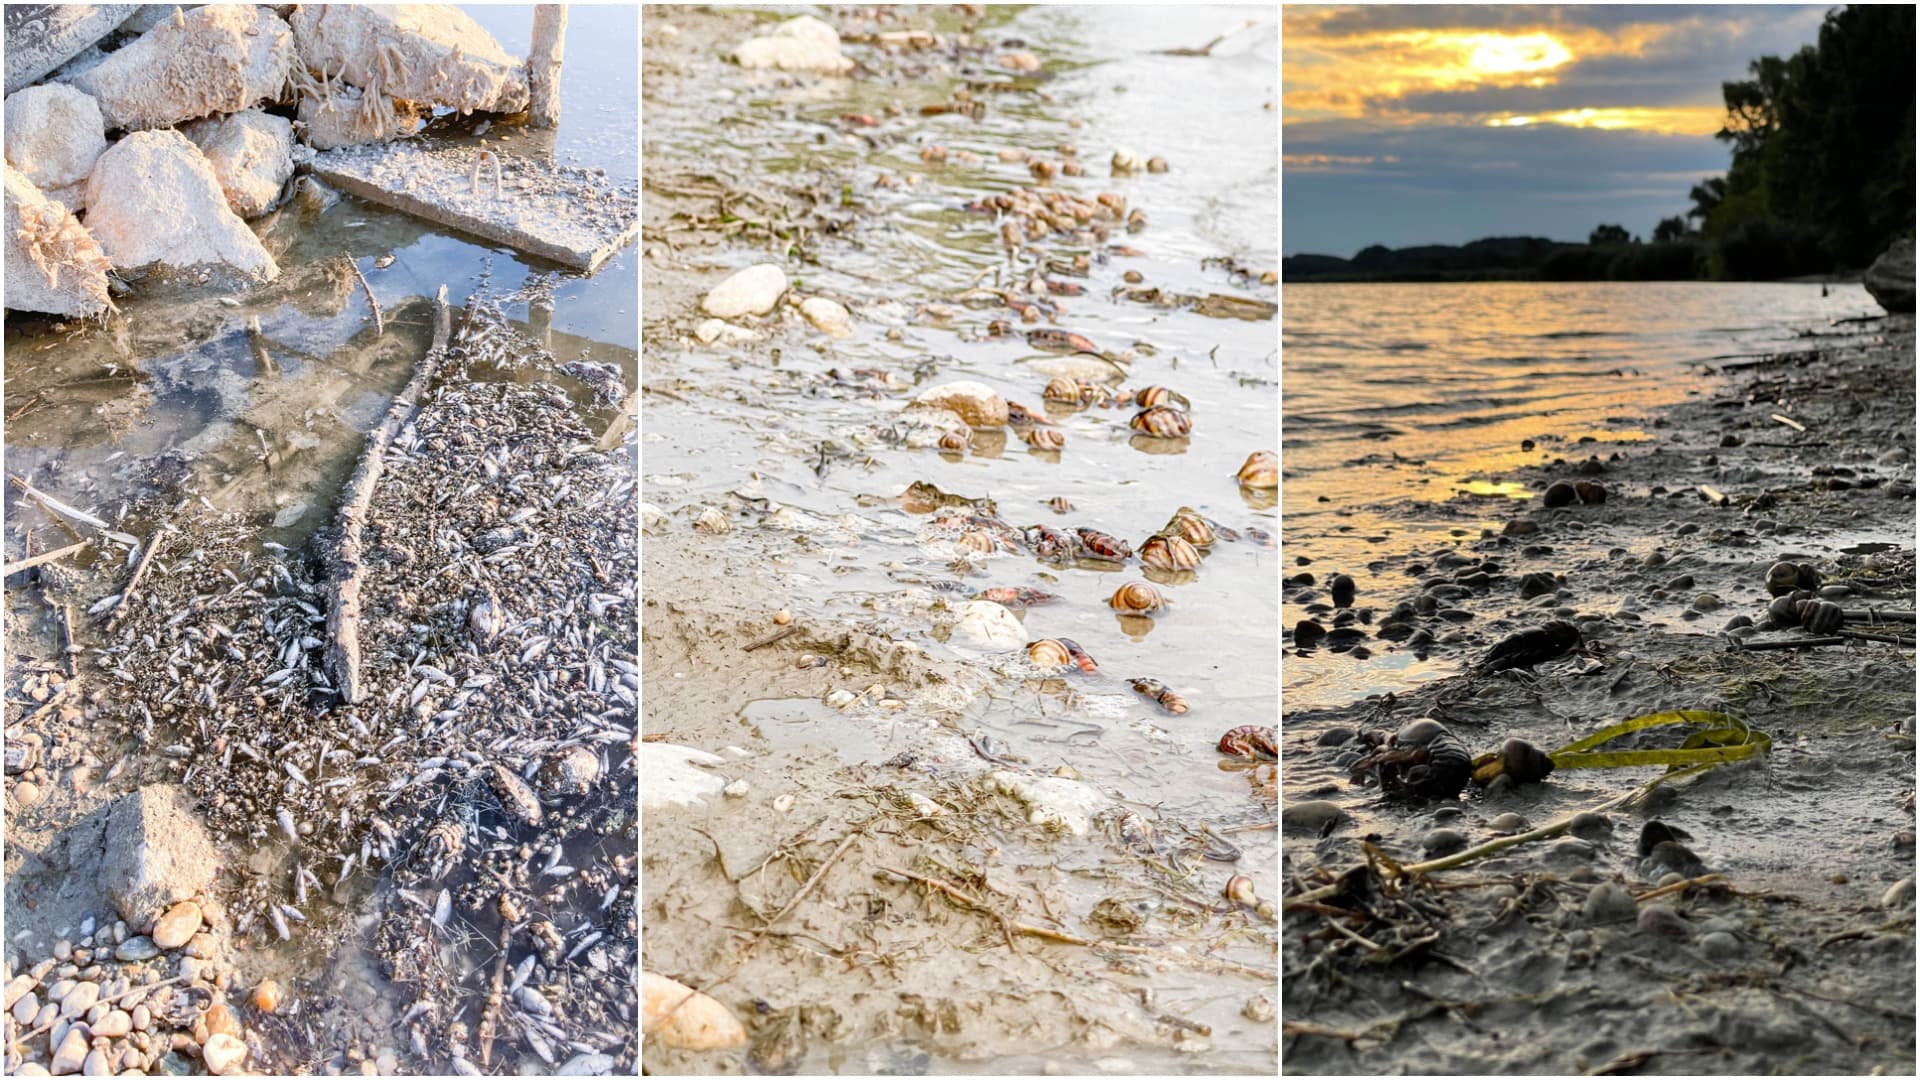 Rákok és halak ezrei pusztultak el a Dunán, és senki nem vállalja a felelősséget